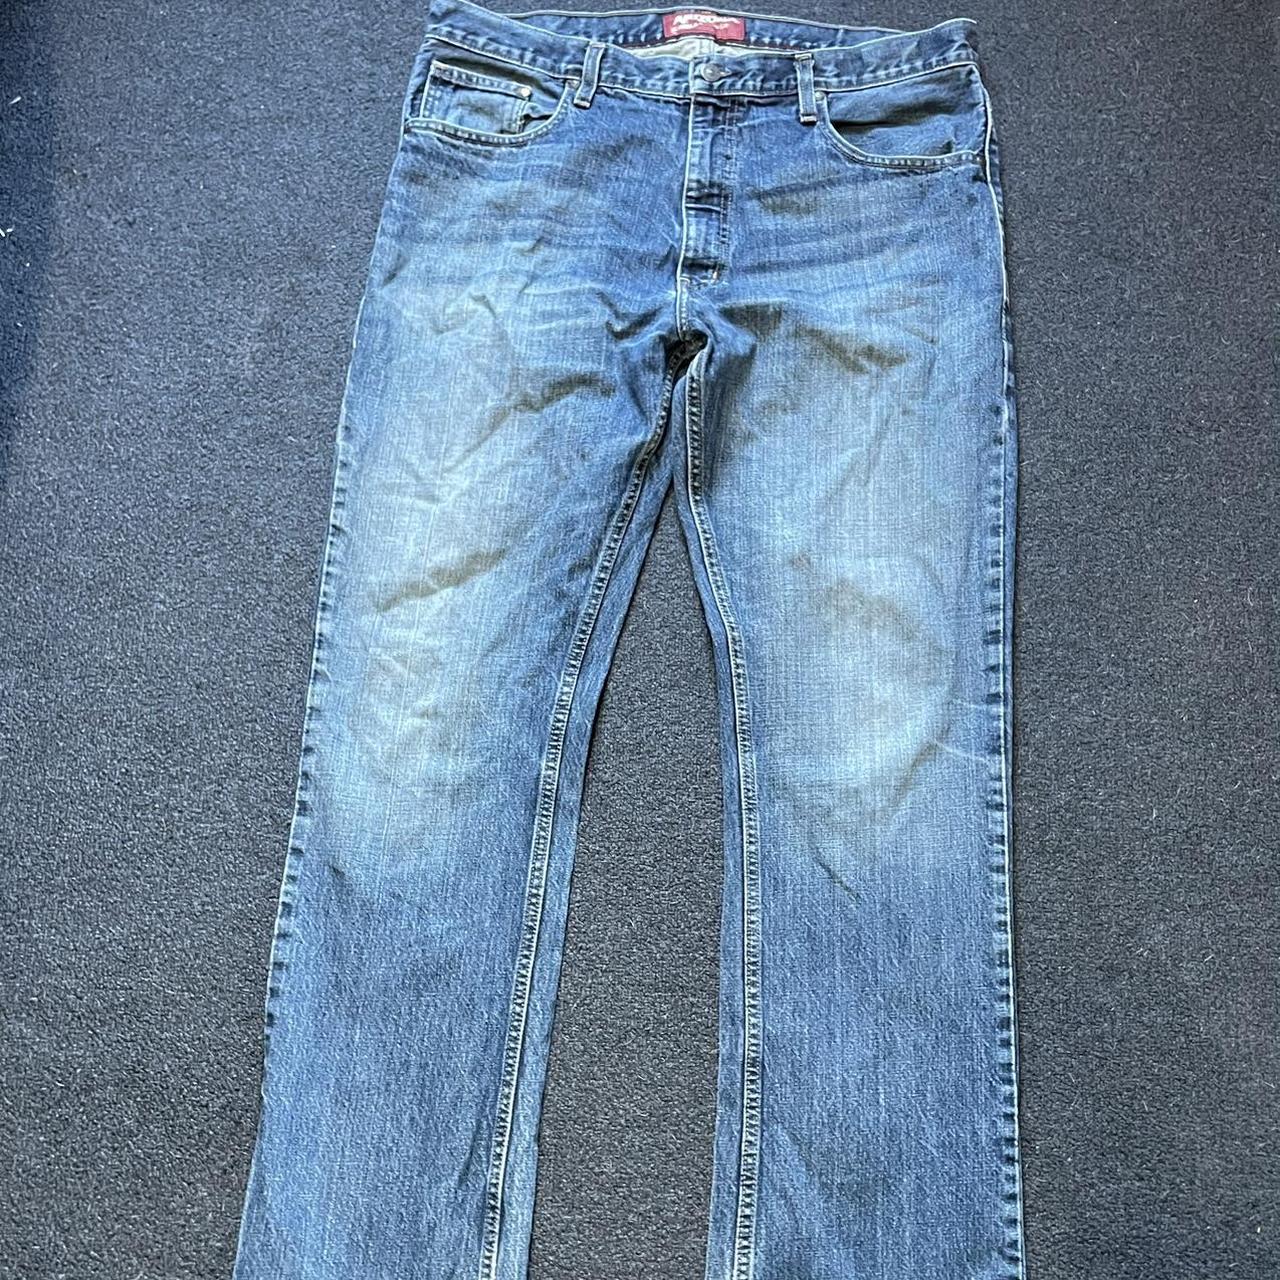 Original Arizona jeans - Depop